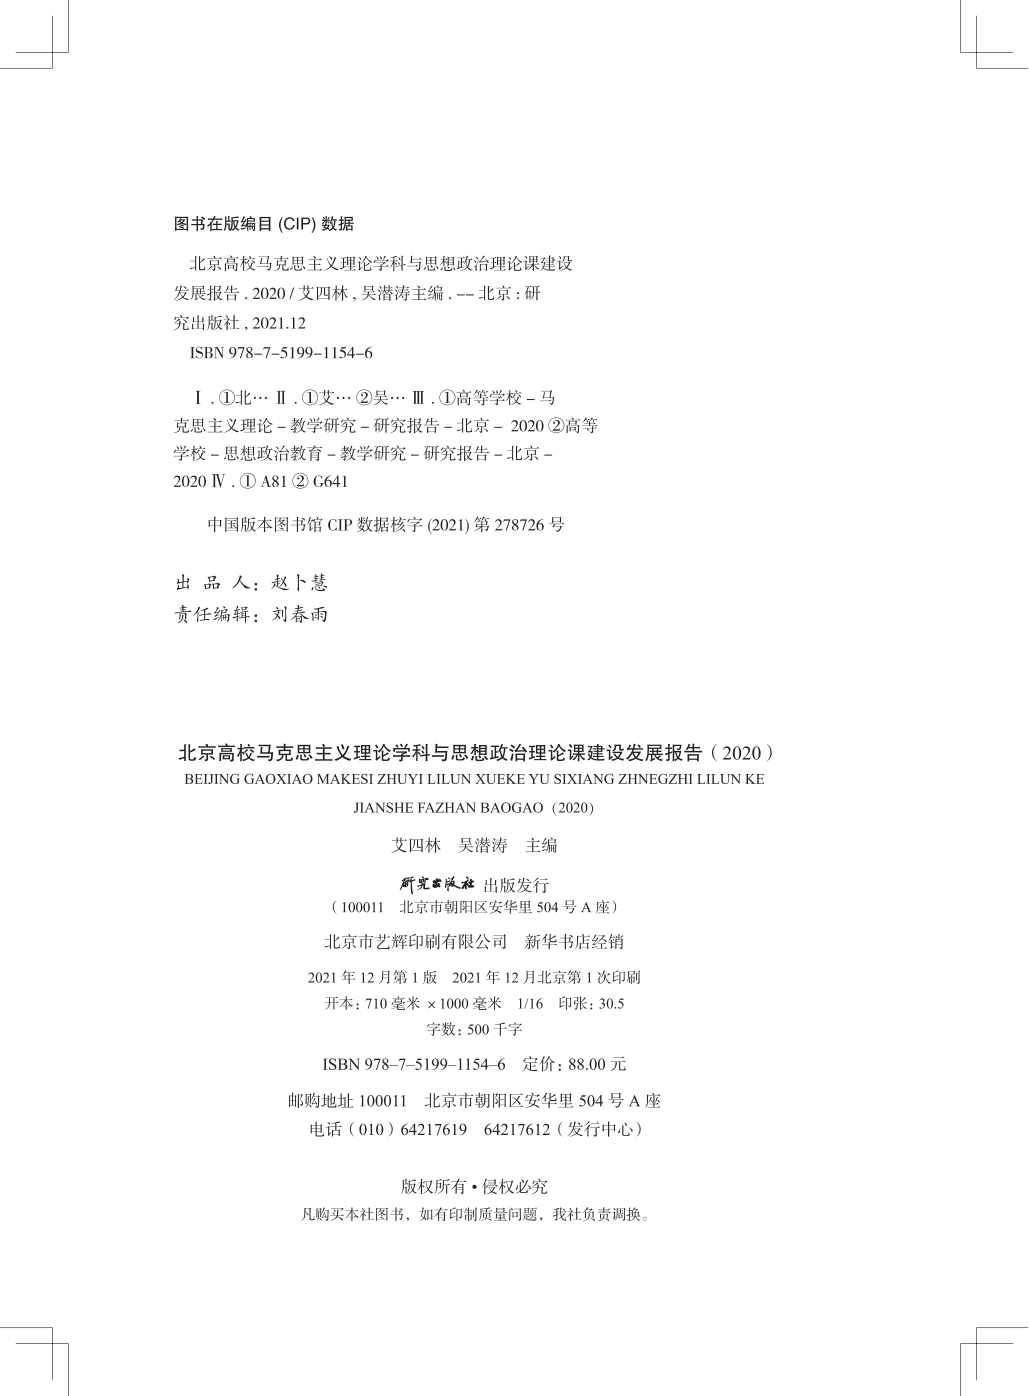 版权页替换--北京市马学科发展报告（2020）_00.png